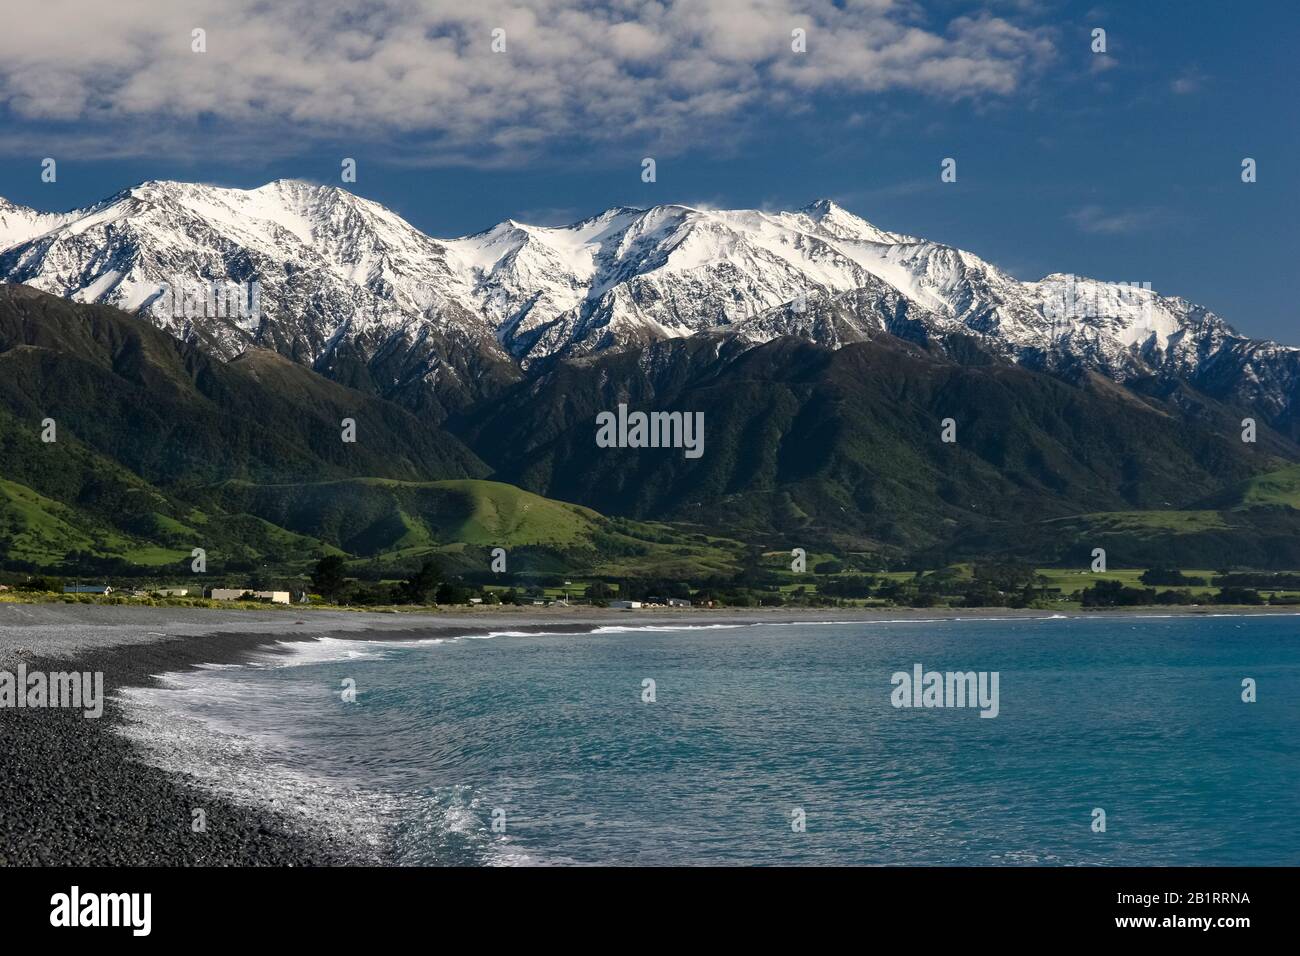 New Zealand Alps near Kaikoura, South Island, New Zealand Stock Photo